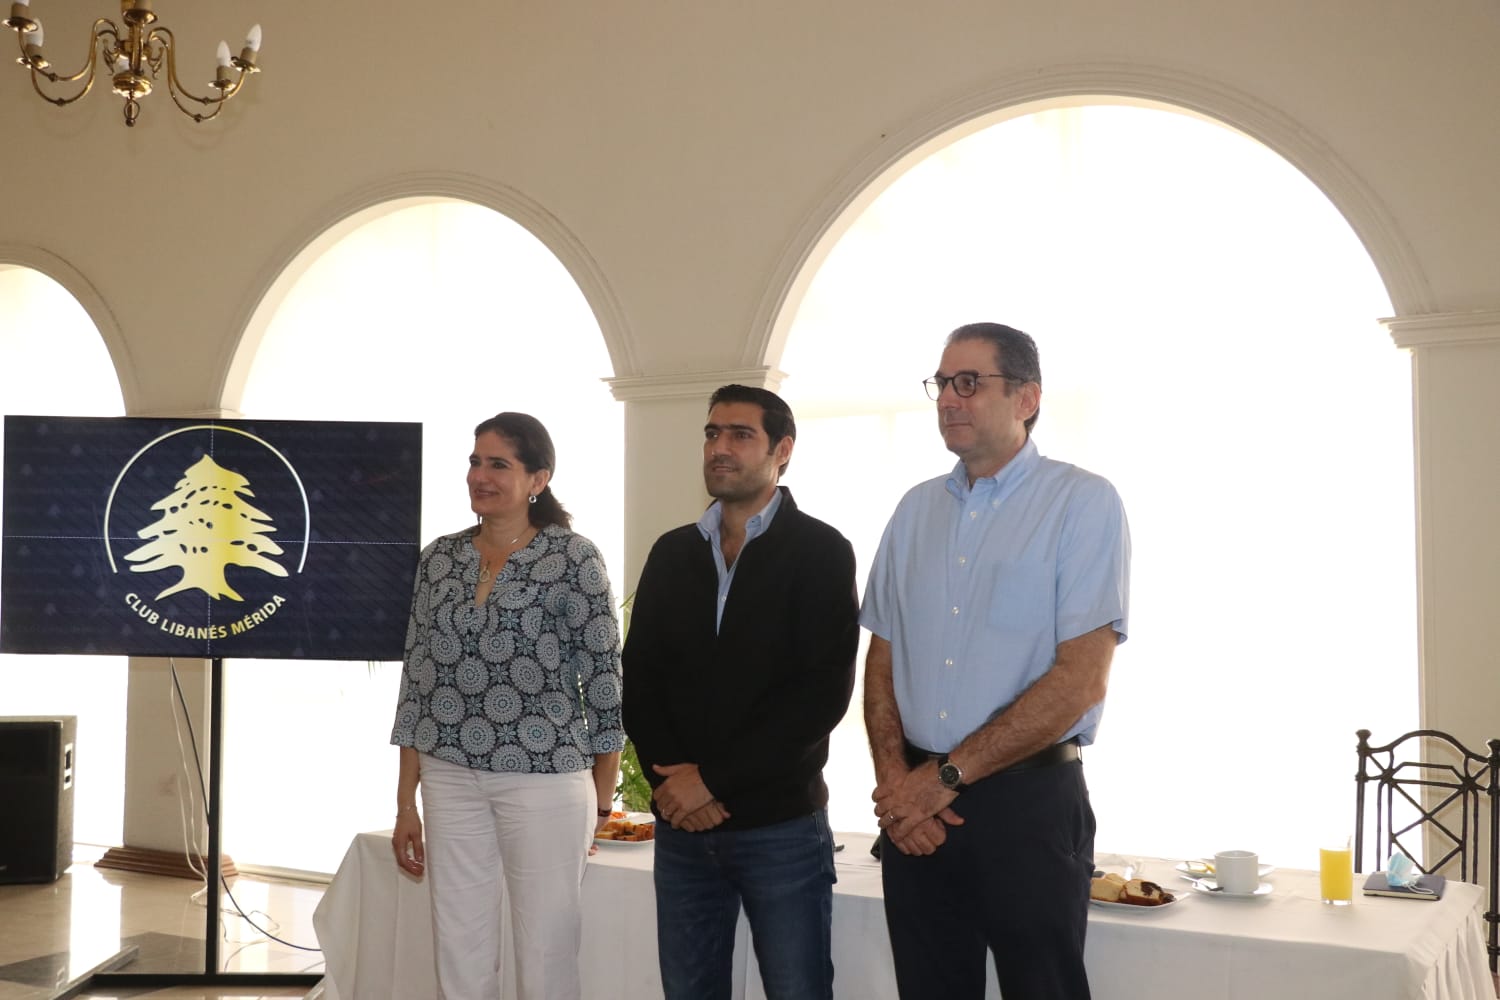 A seguir sumando valores del trabajo y la familia: Club Libanés de Mérida -  El Cronista Yucatán